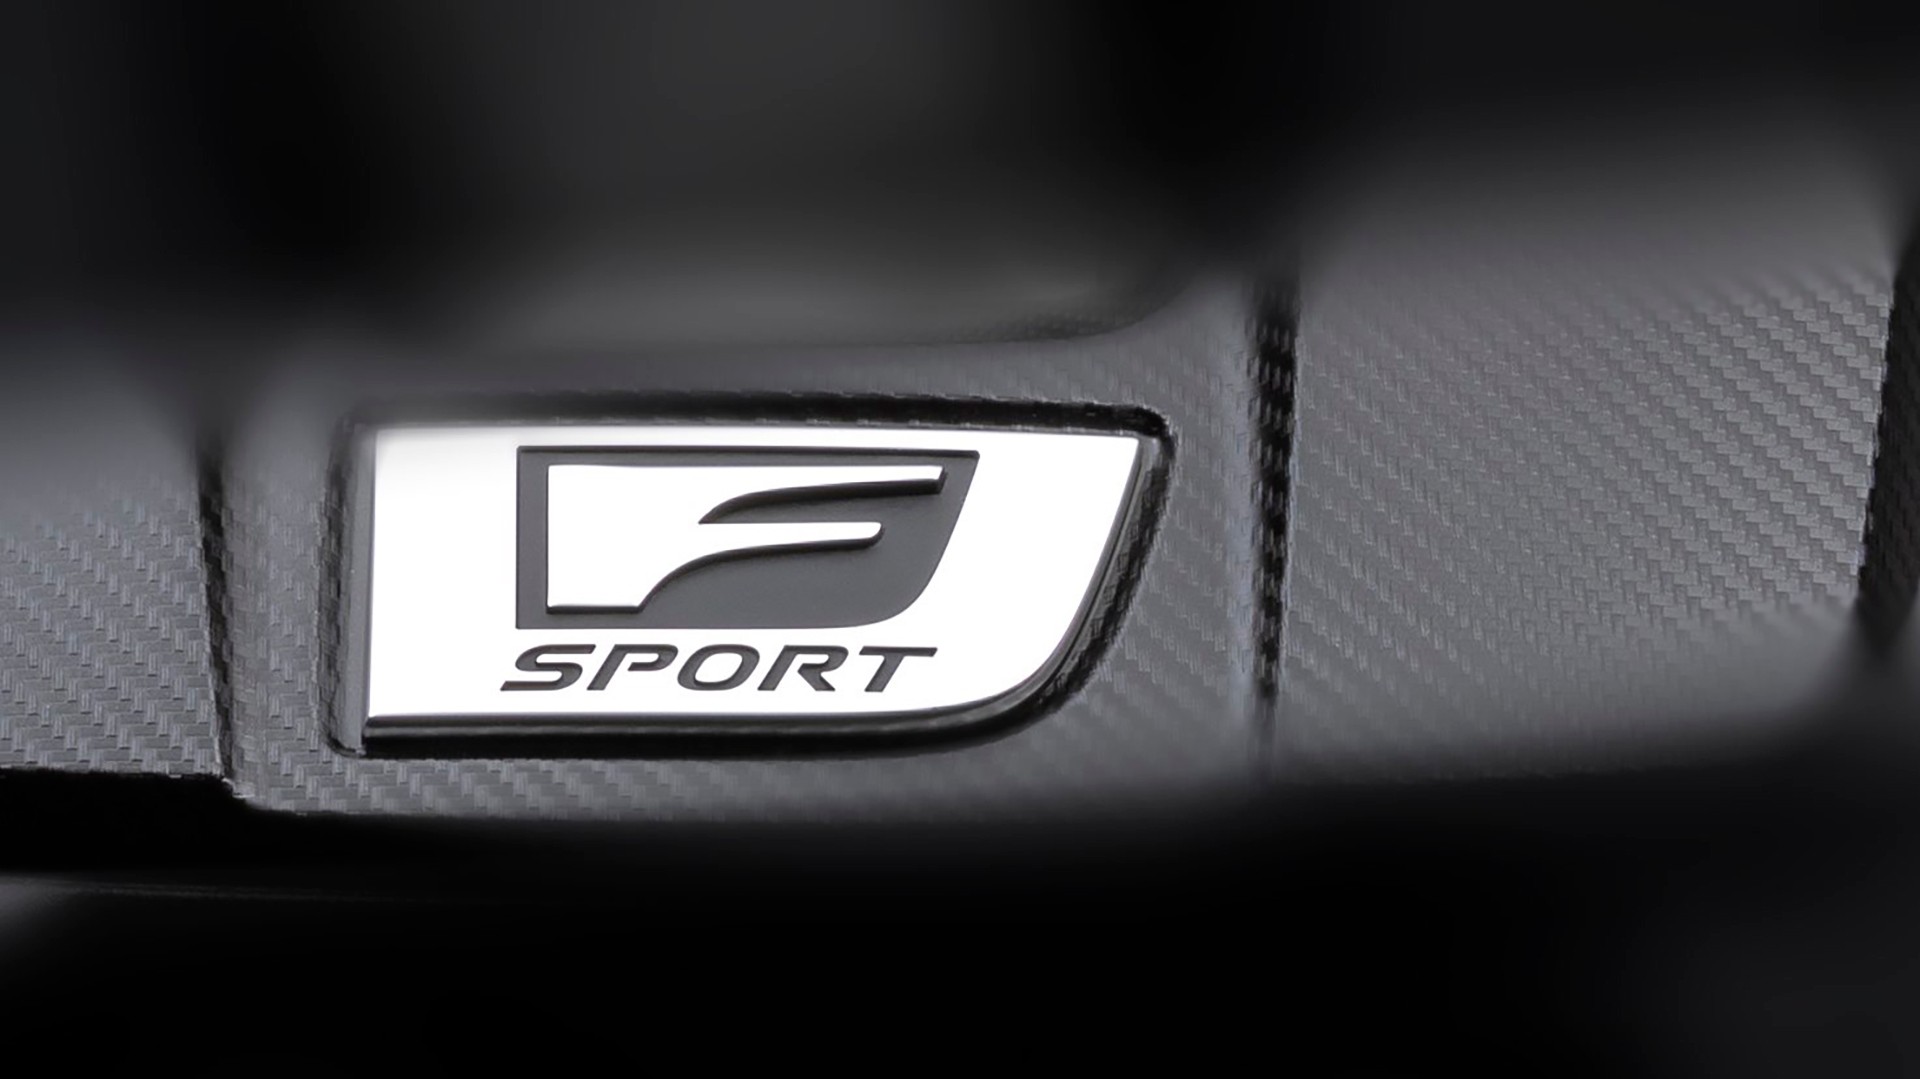 Lexus prepara un nuevo modelo con el sello “F Sport”